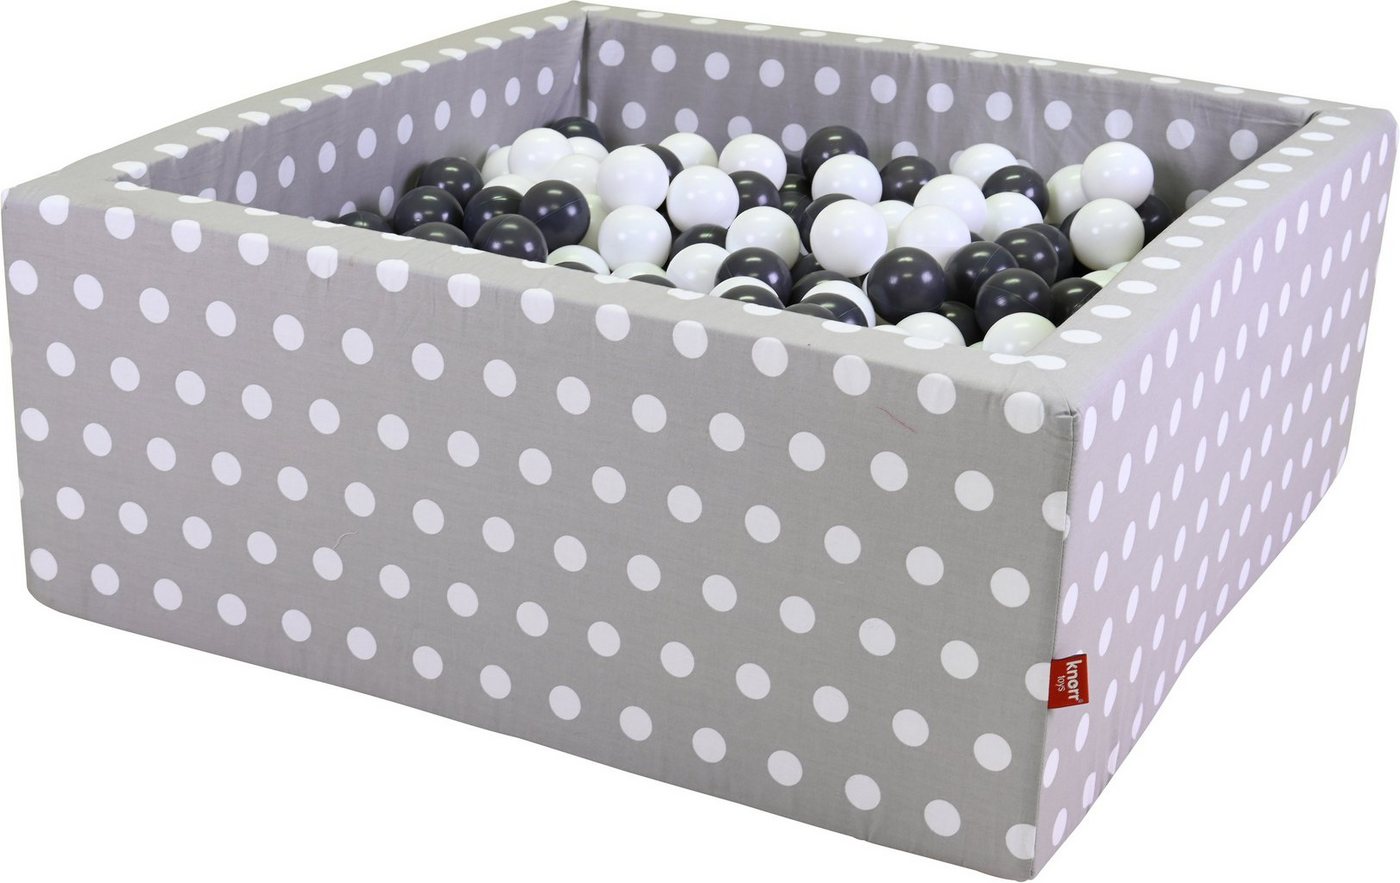 Knorrtoys® Bällebad Soft, Grey White Dots, eckig mit 100 Bällen Grey/creme, Made in Europe von Knorrtoys®